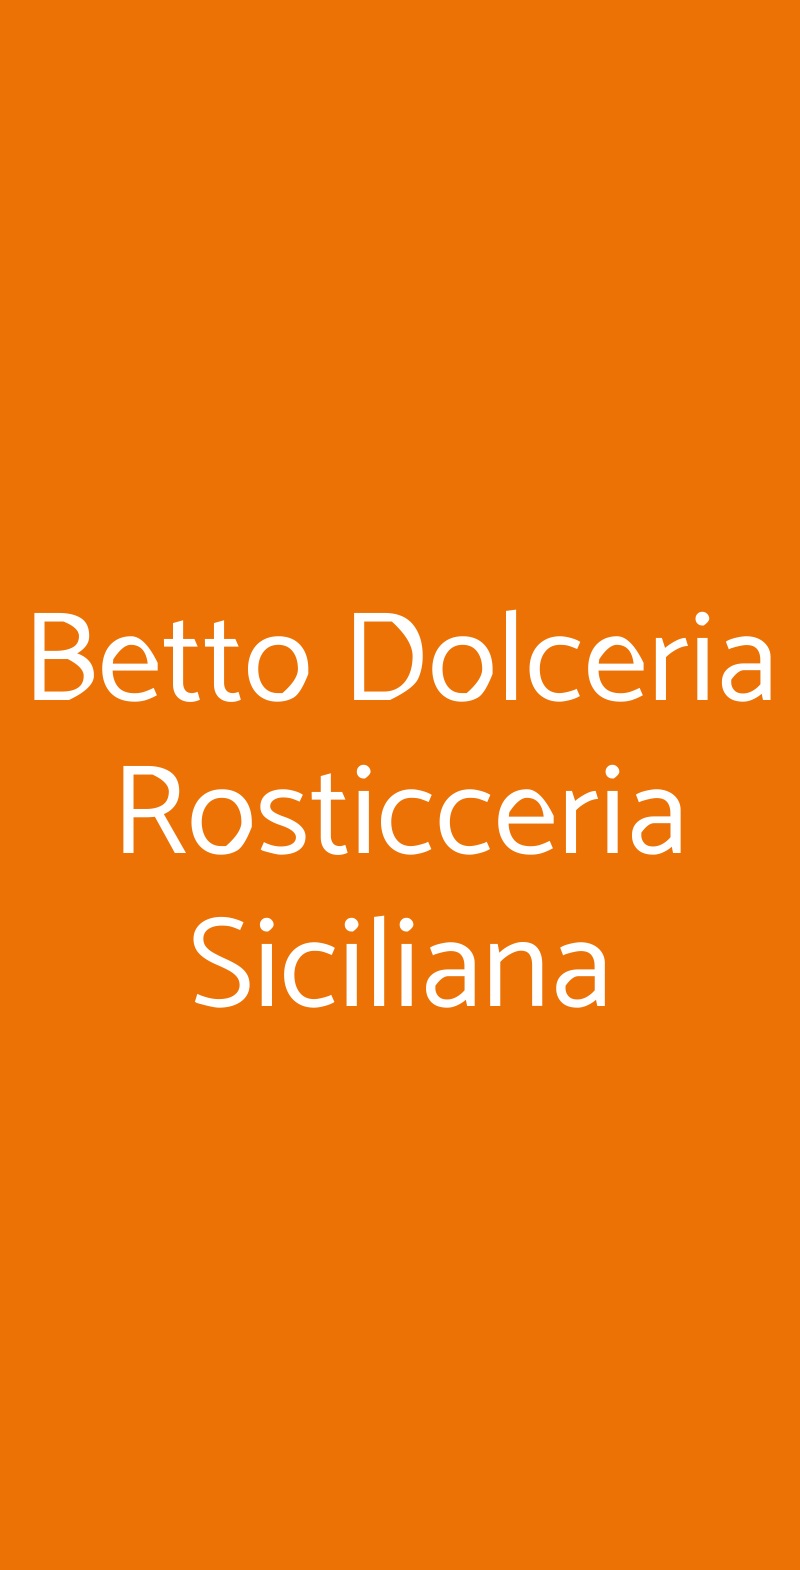 Betto Dolceria Rosticceria Siciliana Milano menù 1 pagina